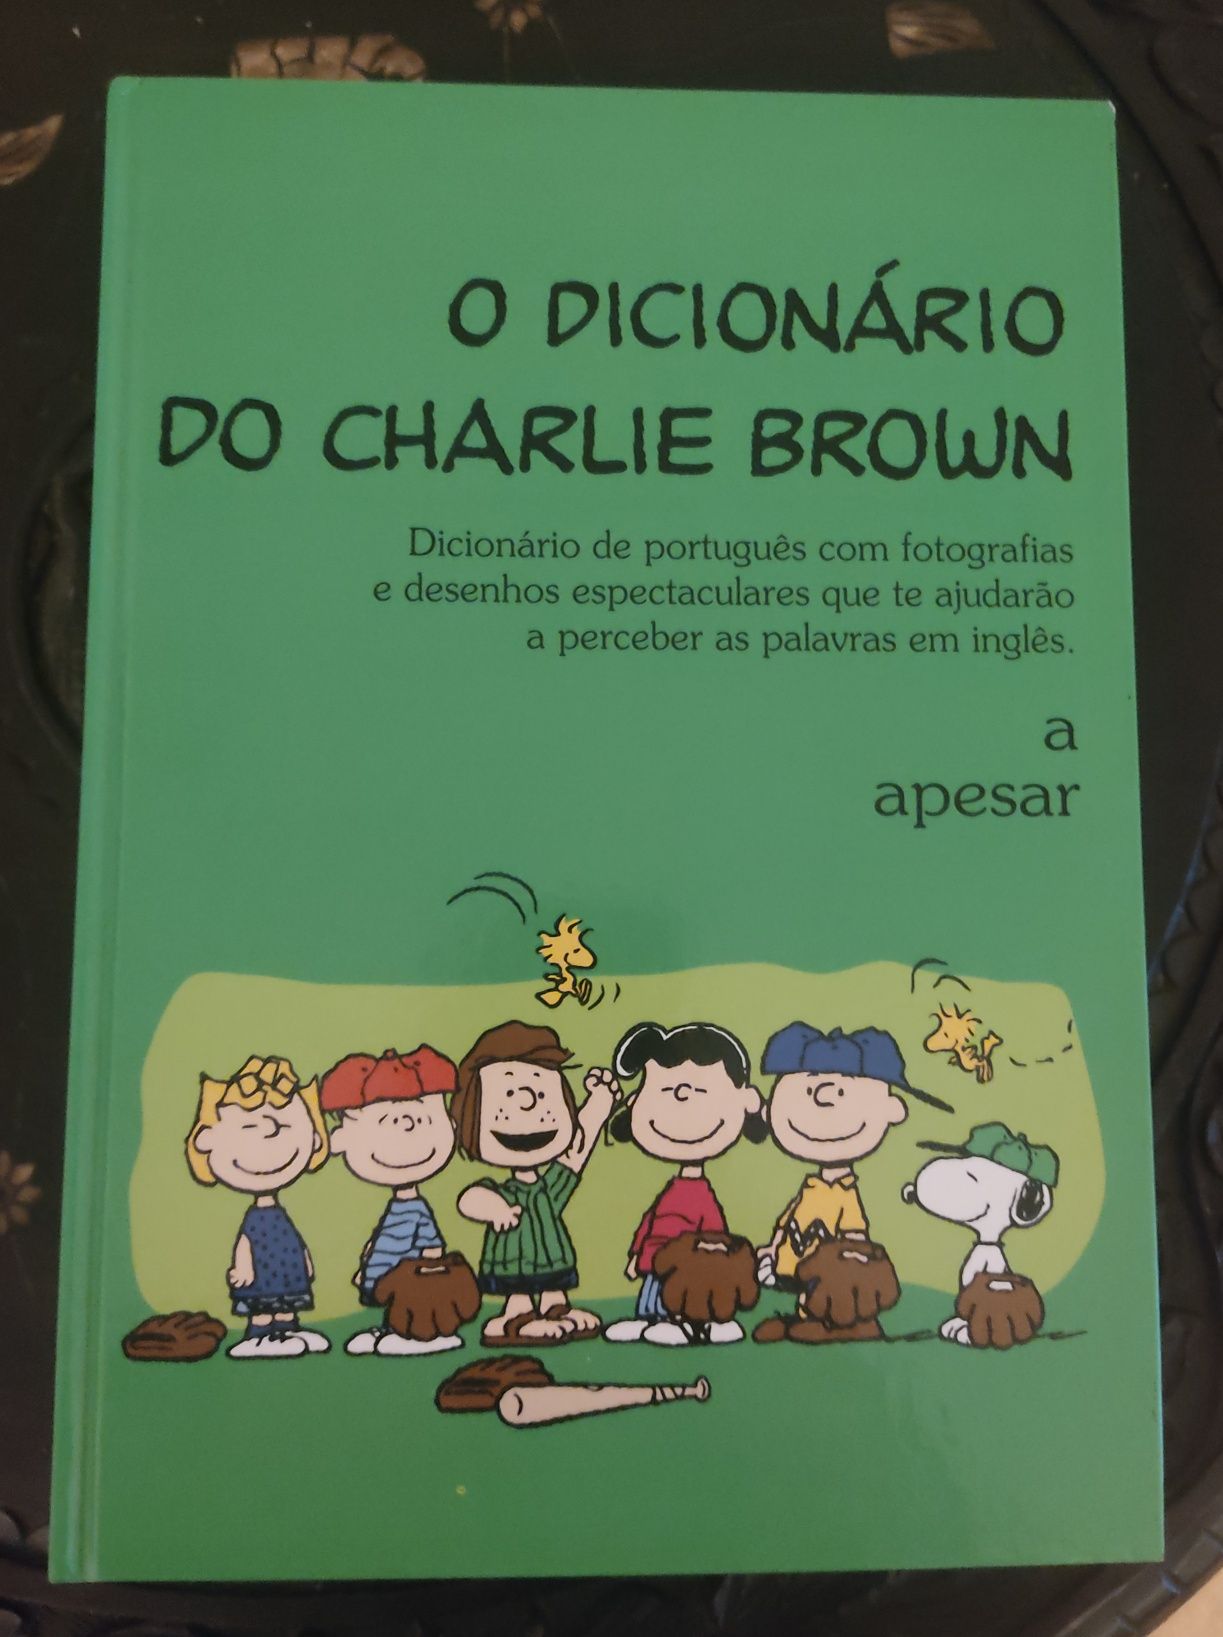 Coleção completa do Dicionário do Charlie Brown, em português